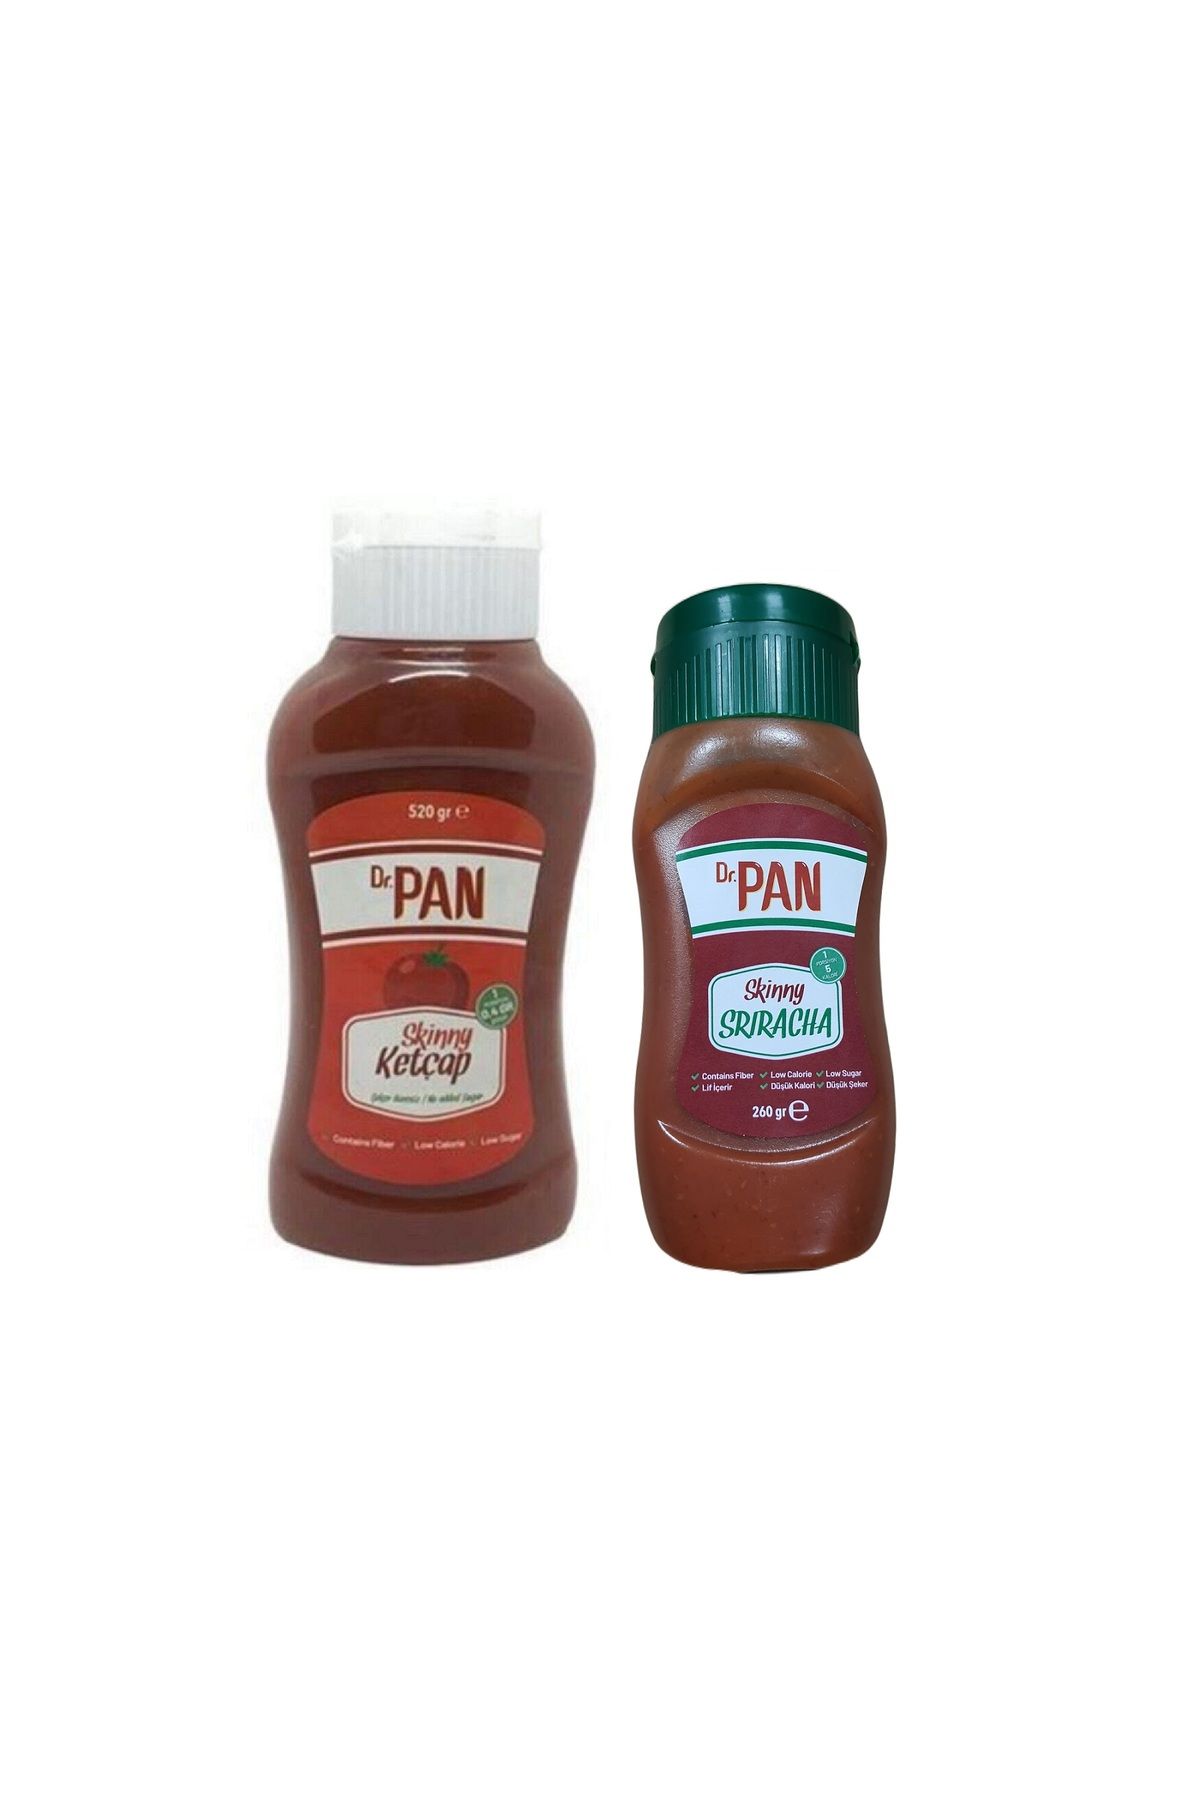 Dr Pan Dr. Pan 2'li Şekersiz Sos Paketi Ketçap 520 gr ve Sriracha Sosu 260 gr Şekeriz Düşük Kalorili